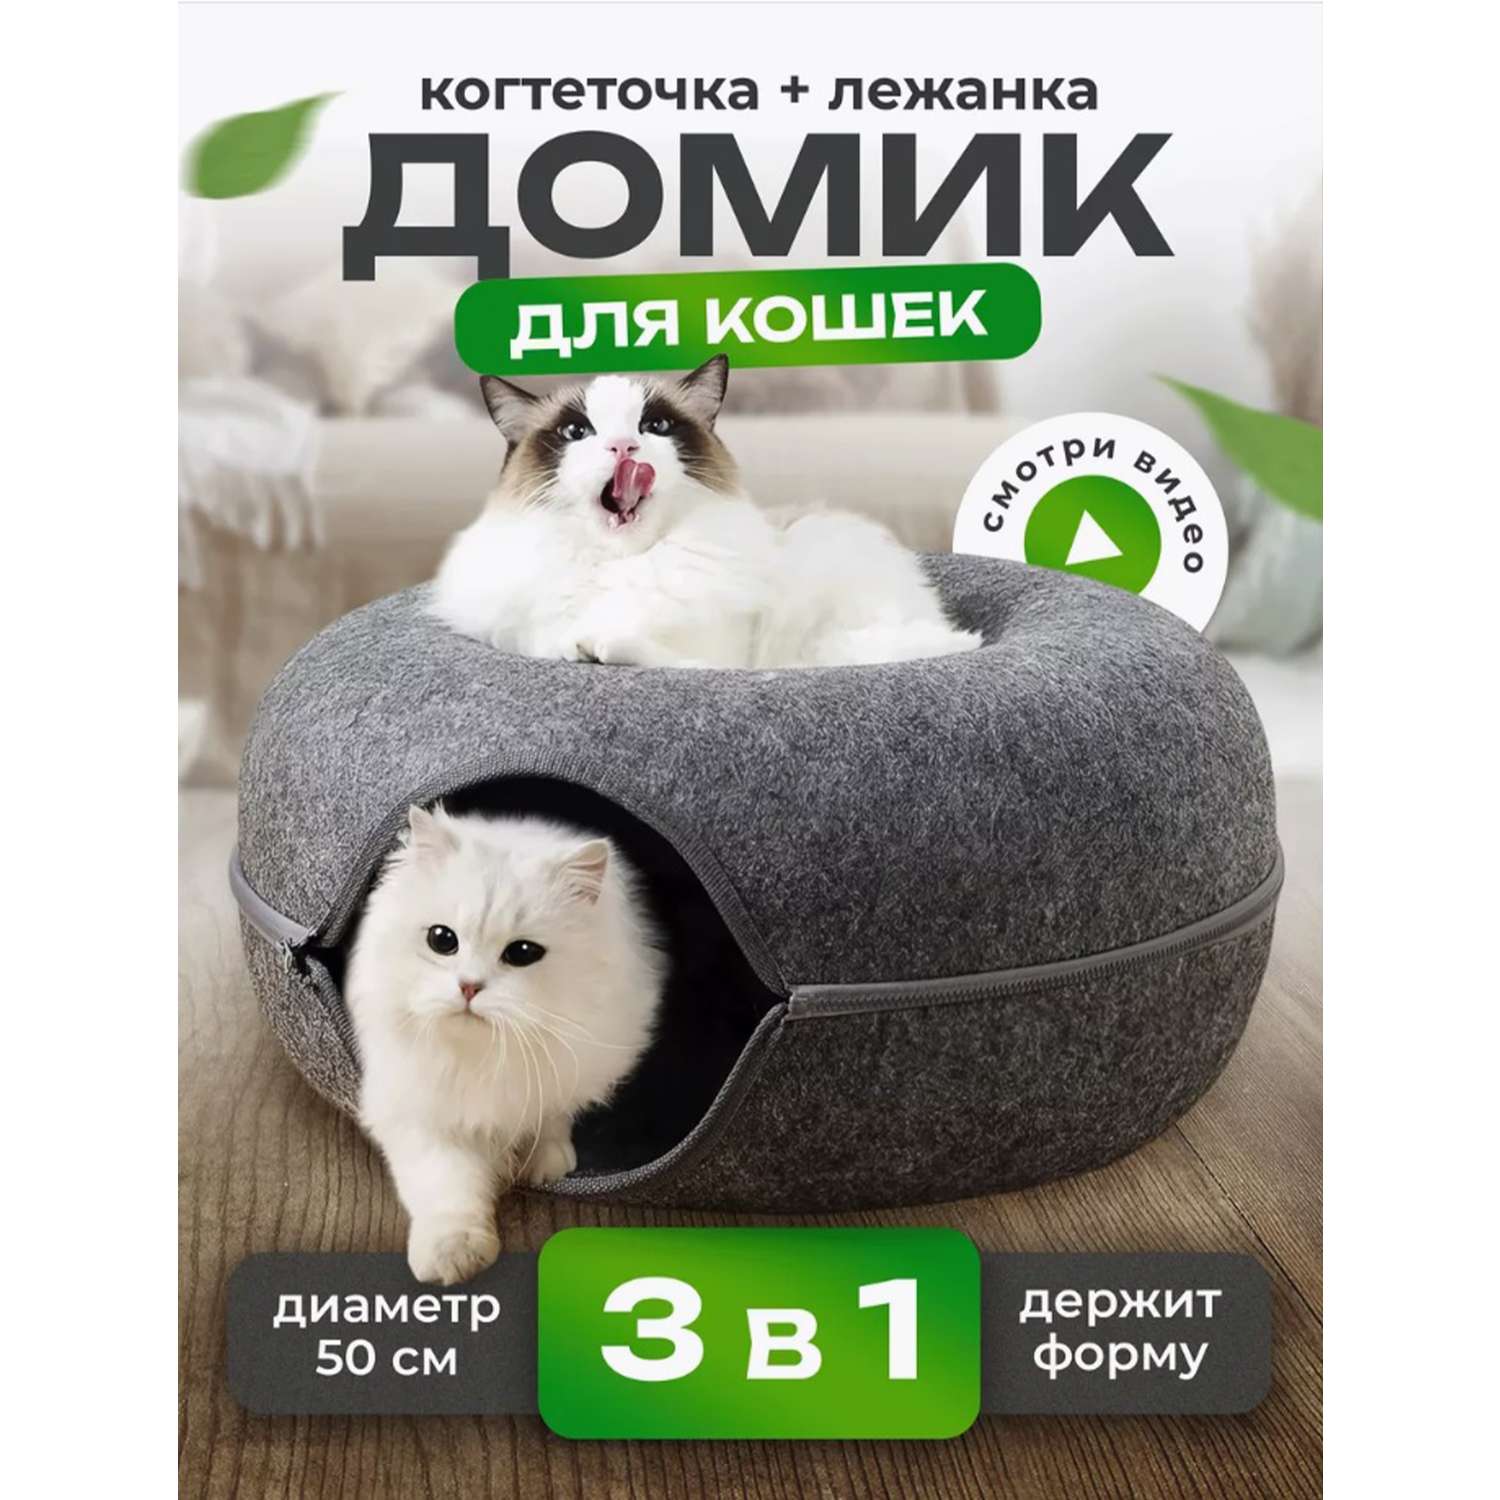 Лежанка пончик ТОТОША для кошек и собак когтечочка Домик бублик - фото 1